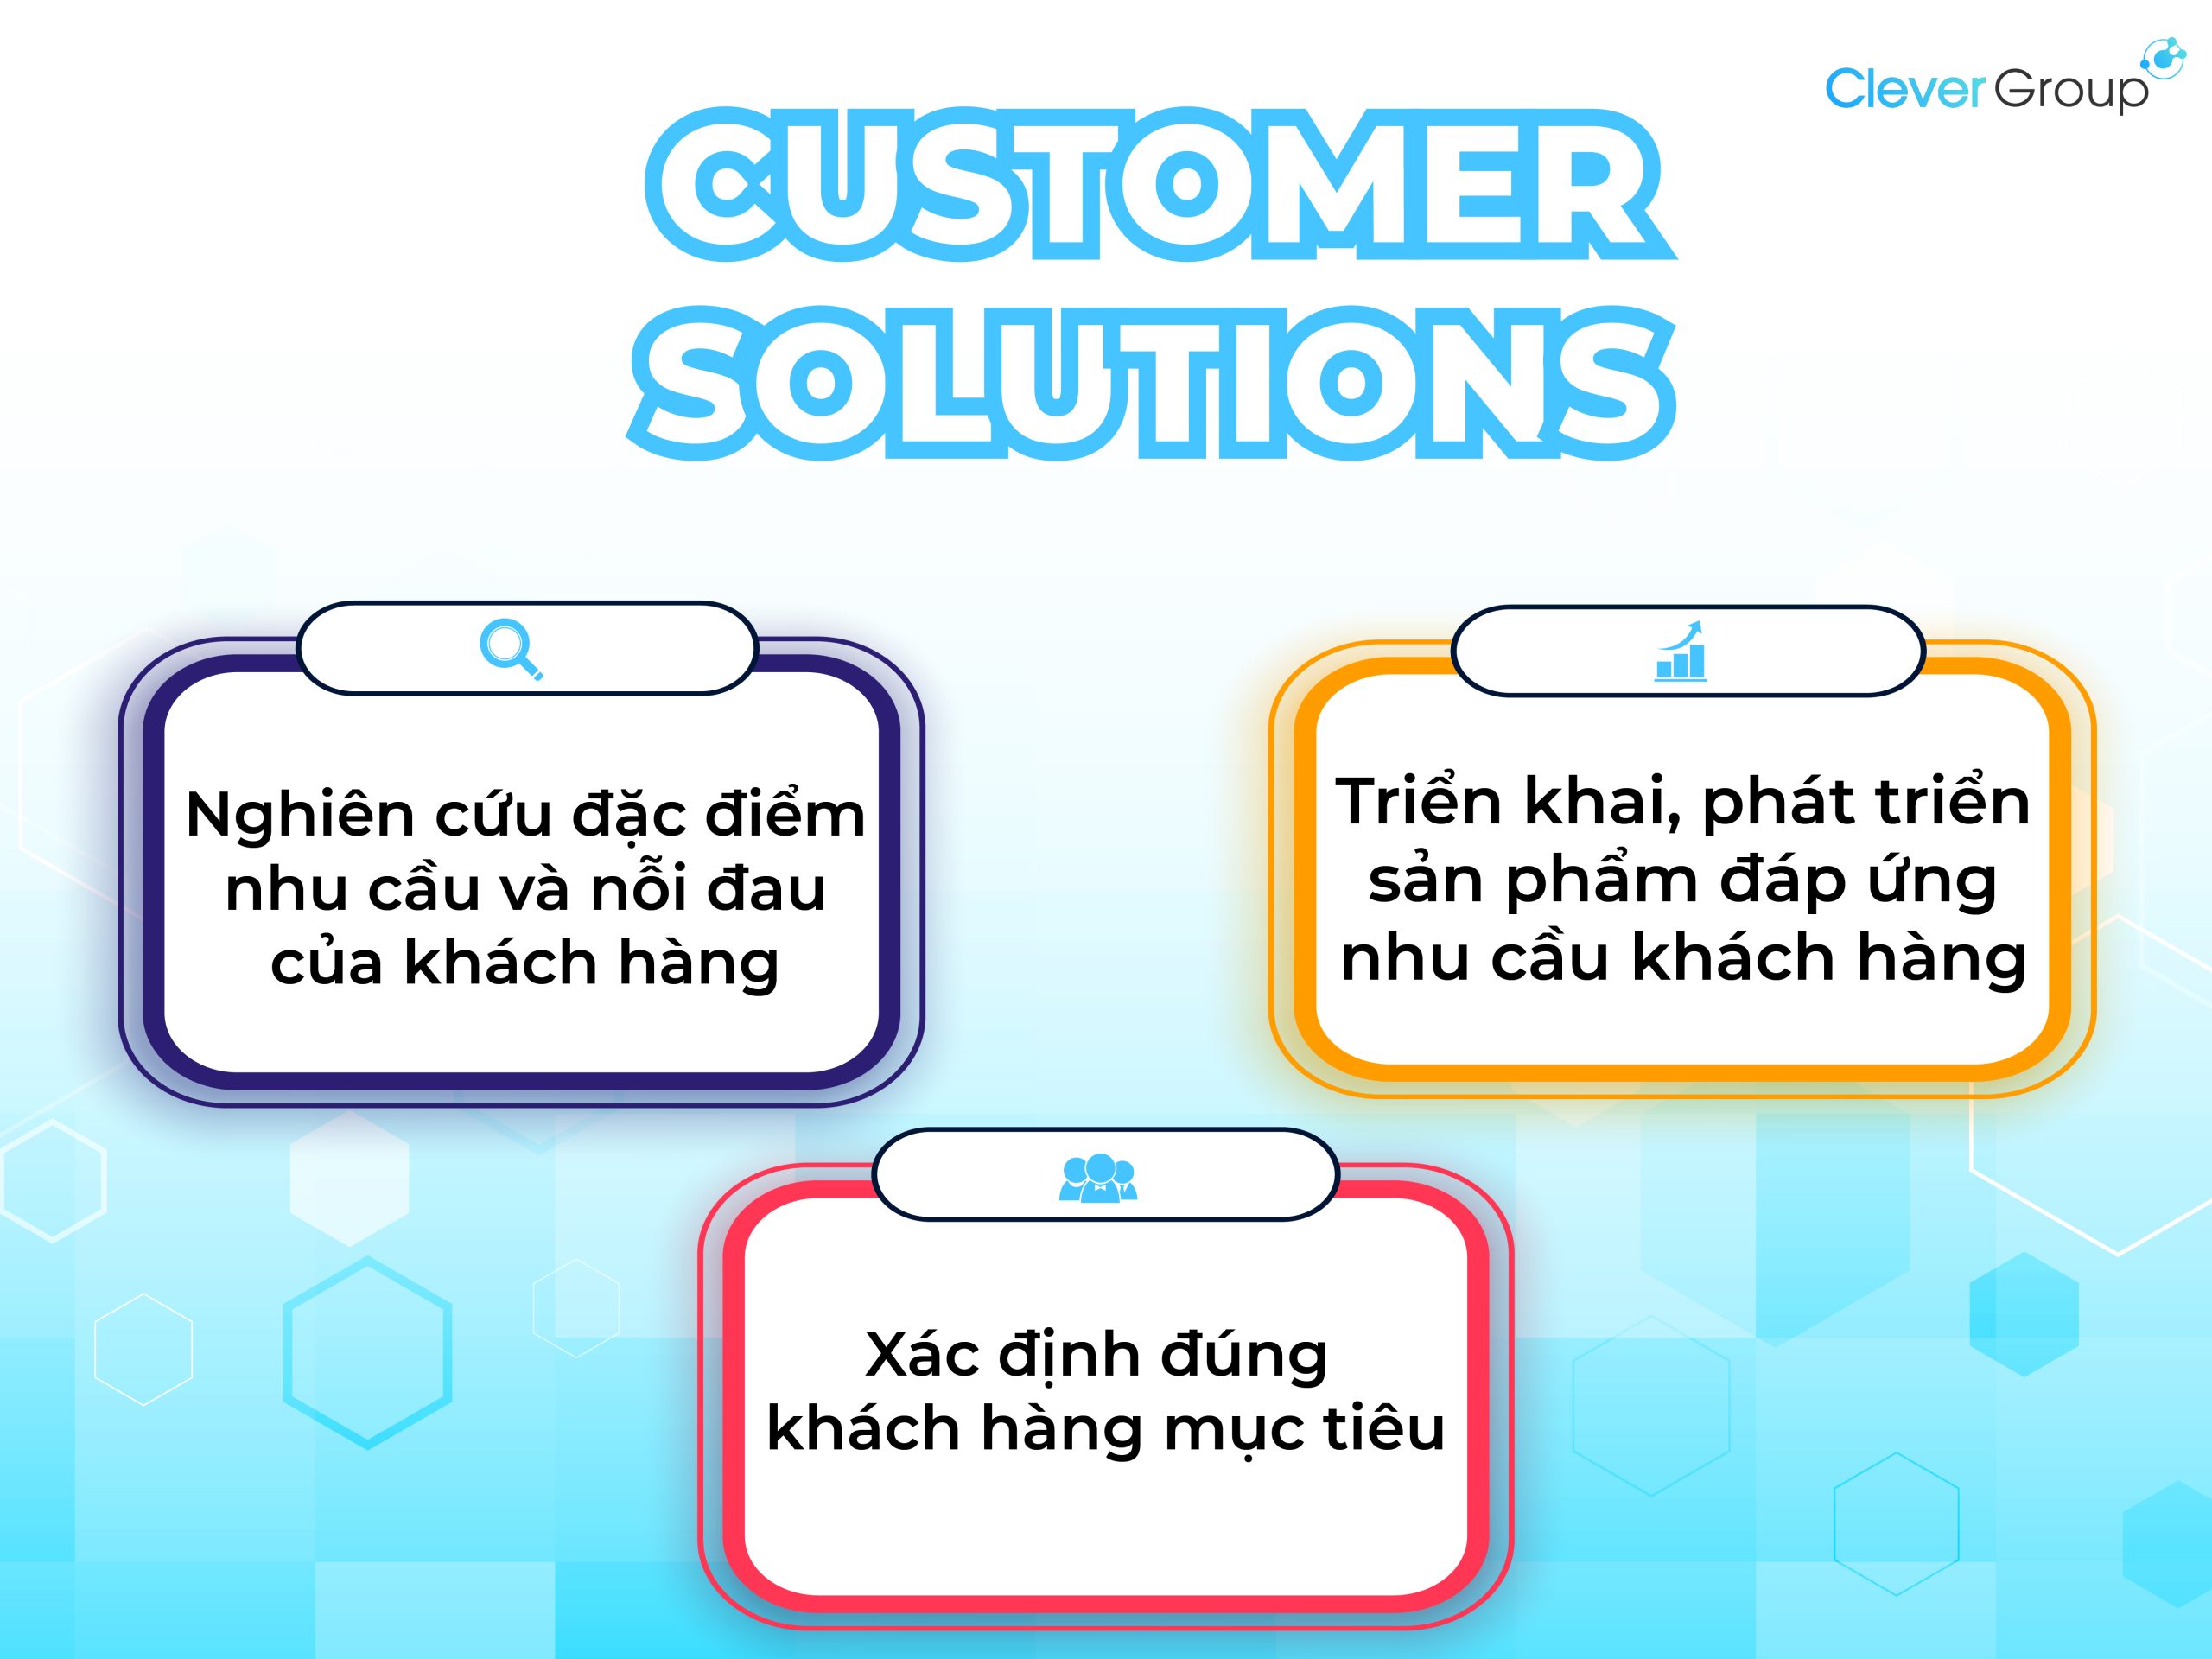 Yếu tố trong marketing 4C: Giải pháp cho khách hàng 